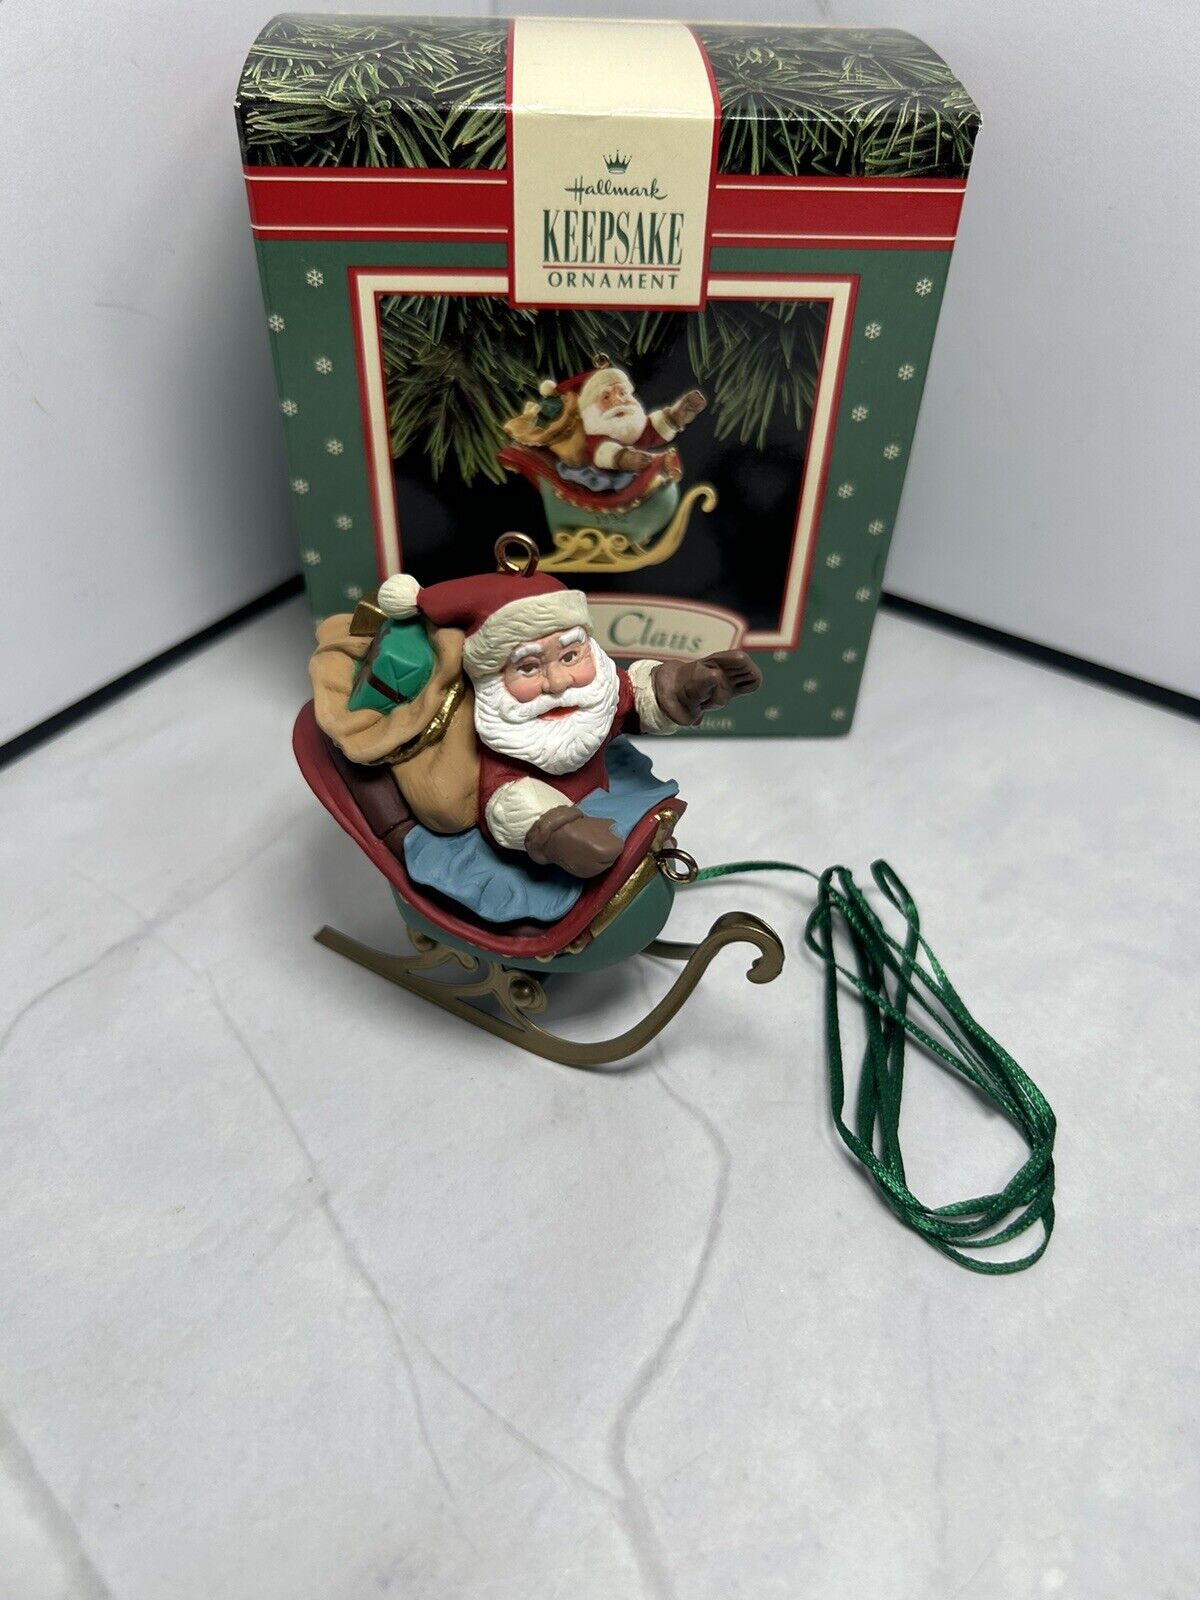 1992 Santa Claus Ornament - Fifth Of Five In His Reindeer - Hallmark Keepsake